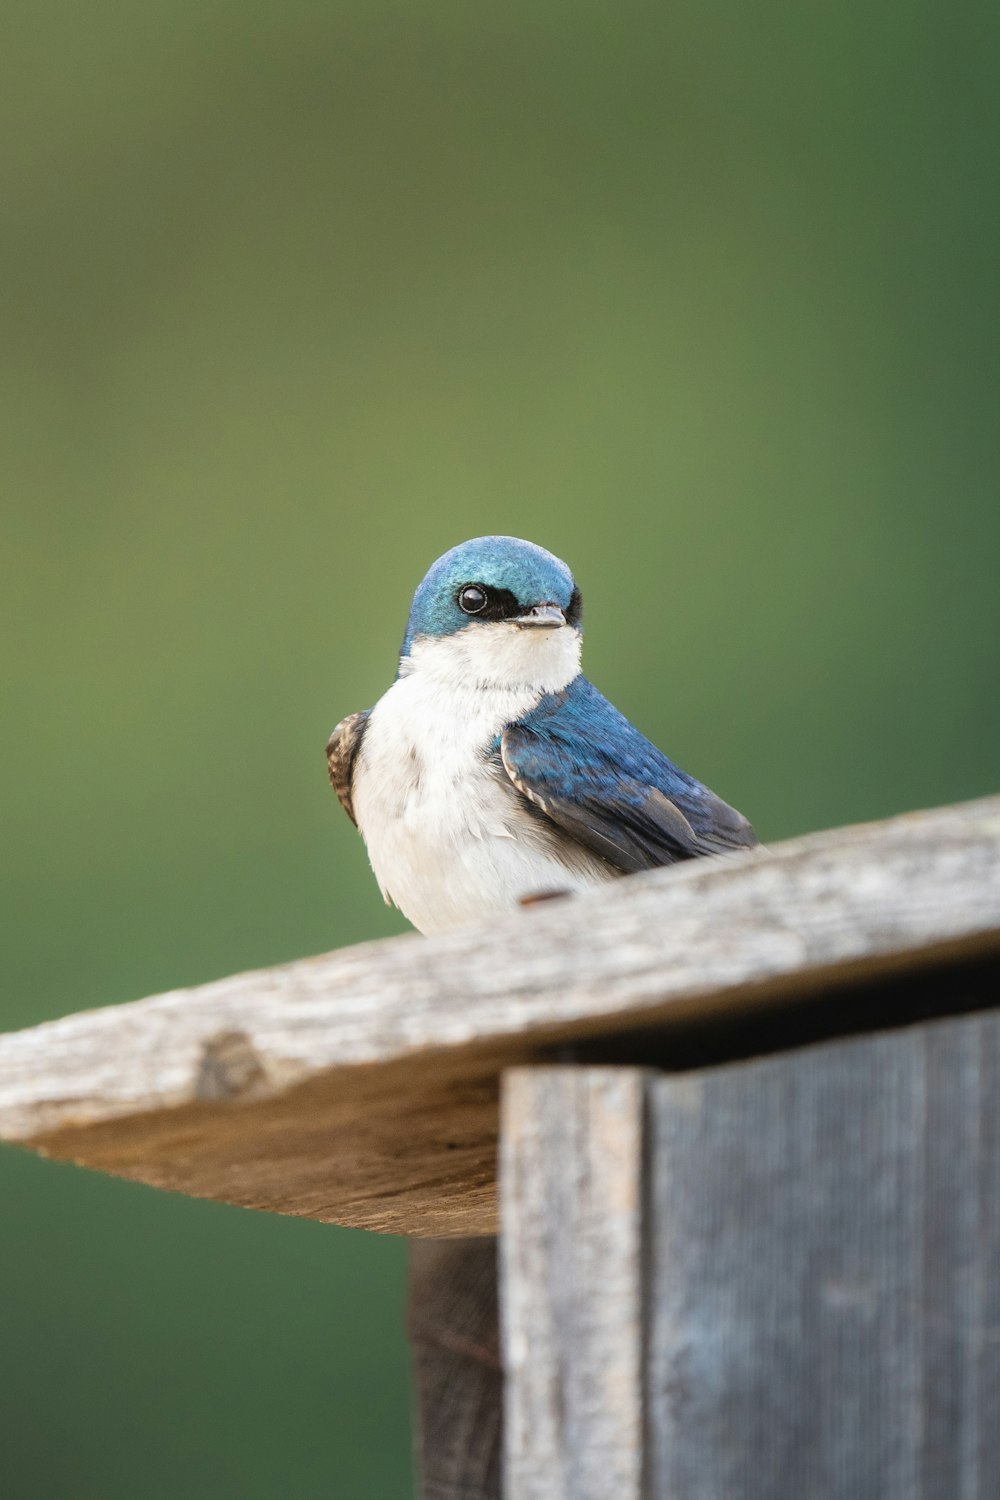 a bird sitting on a wood fence